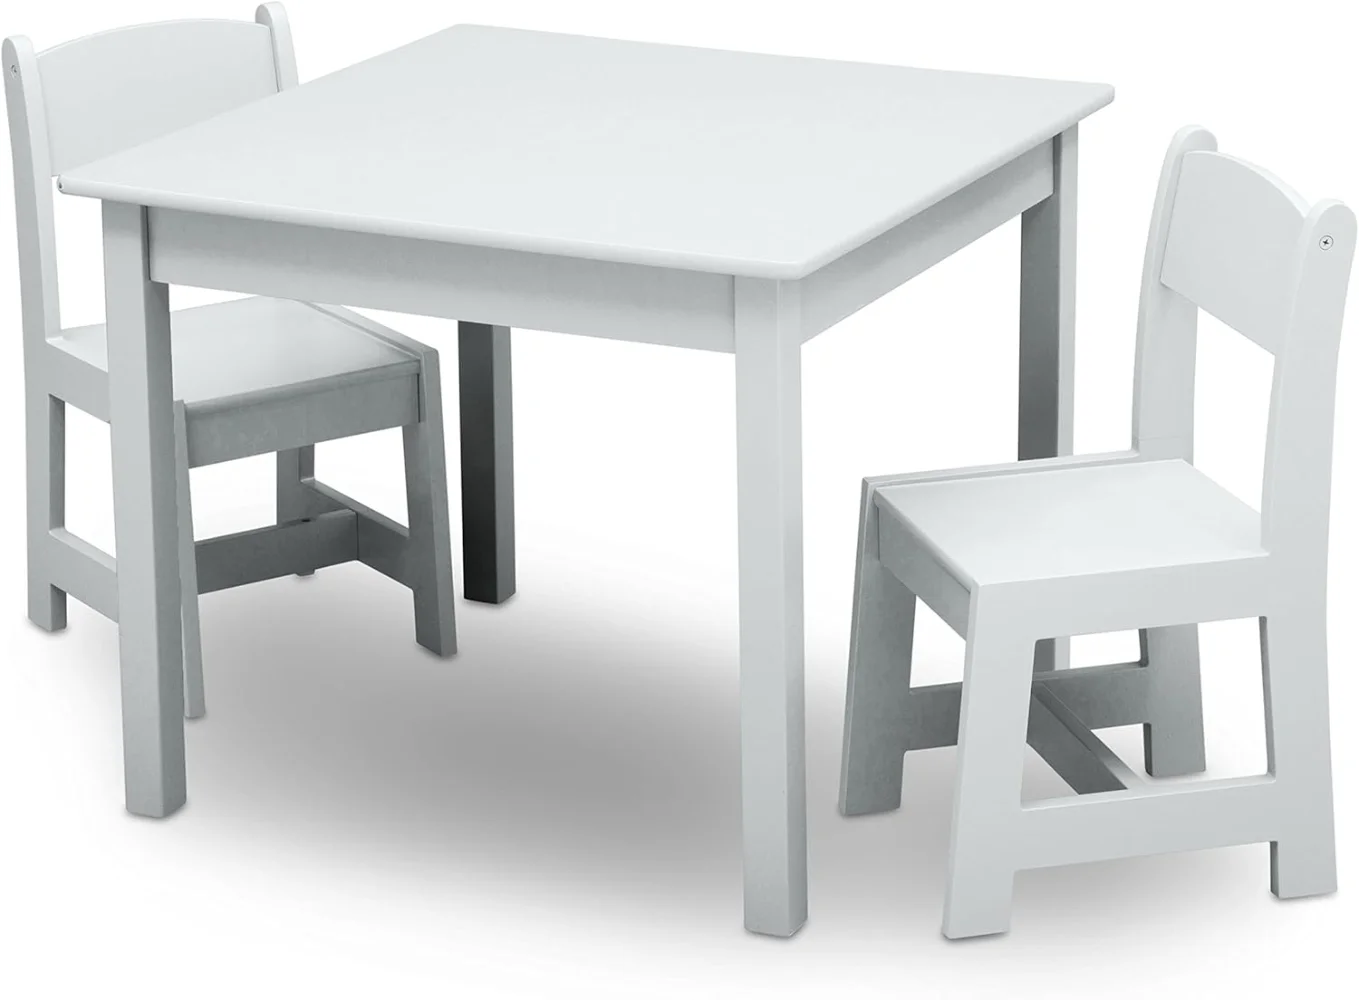 子供用木製テーブルと椅子セット、enguardゴールド認定、artsや工芸品に最適、スナック時間など、2つの椅子が含まれています